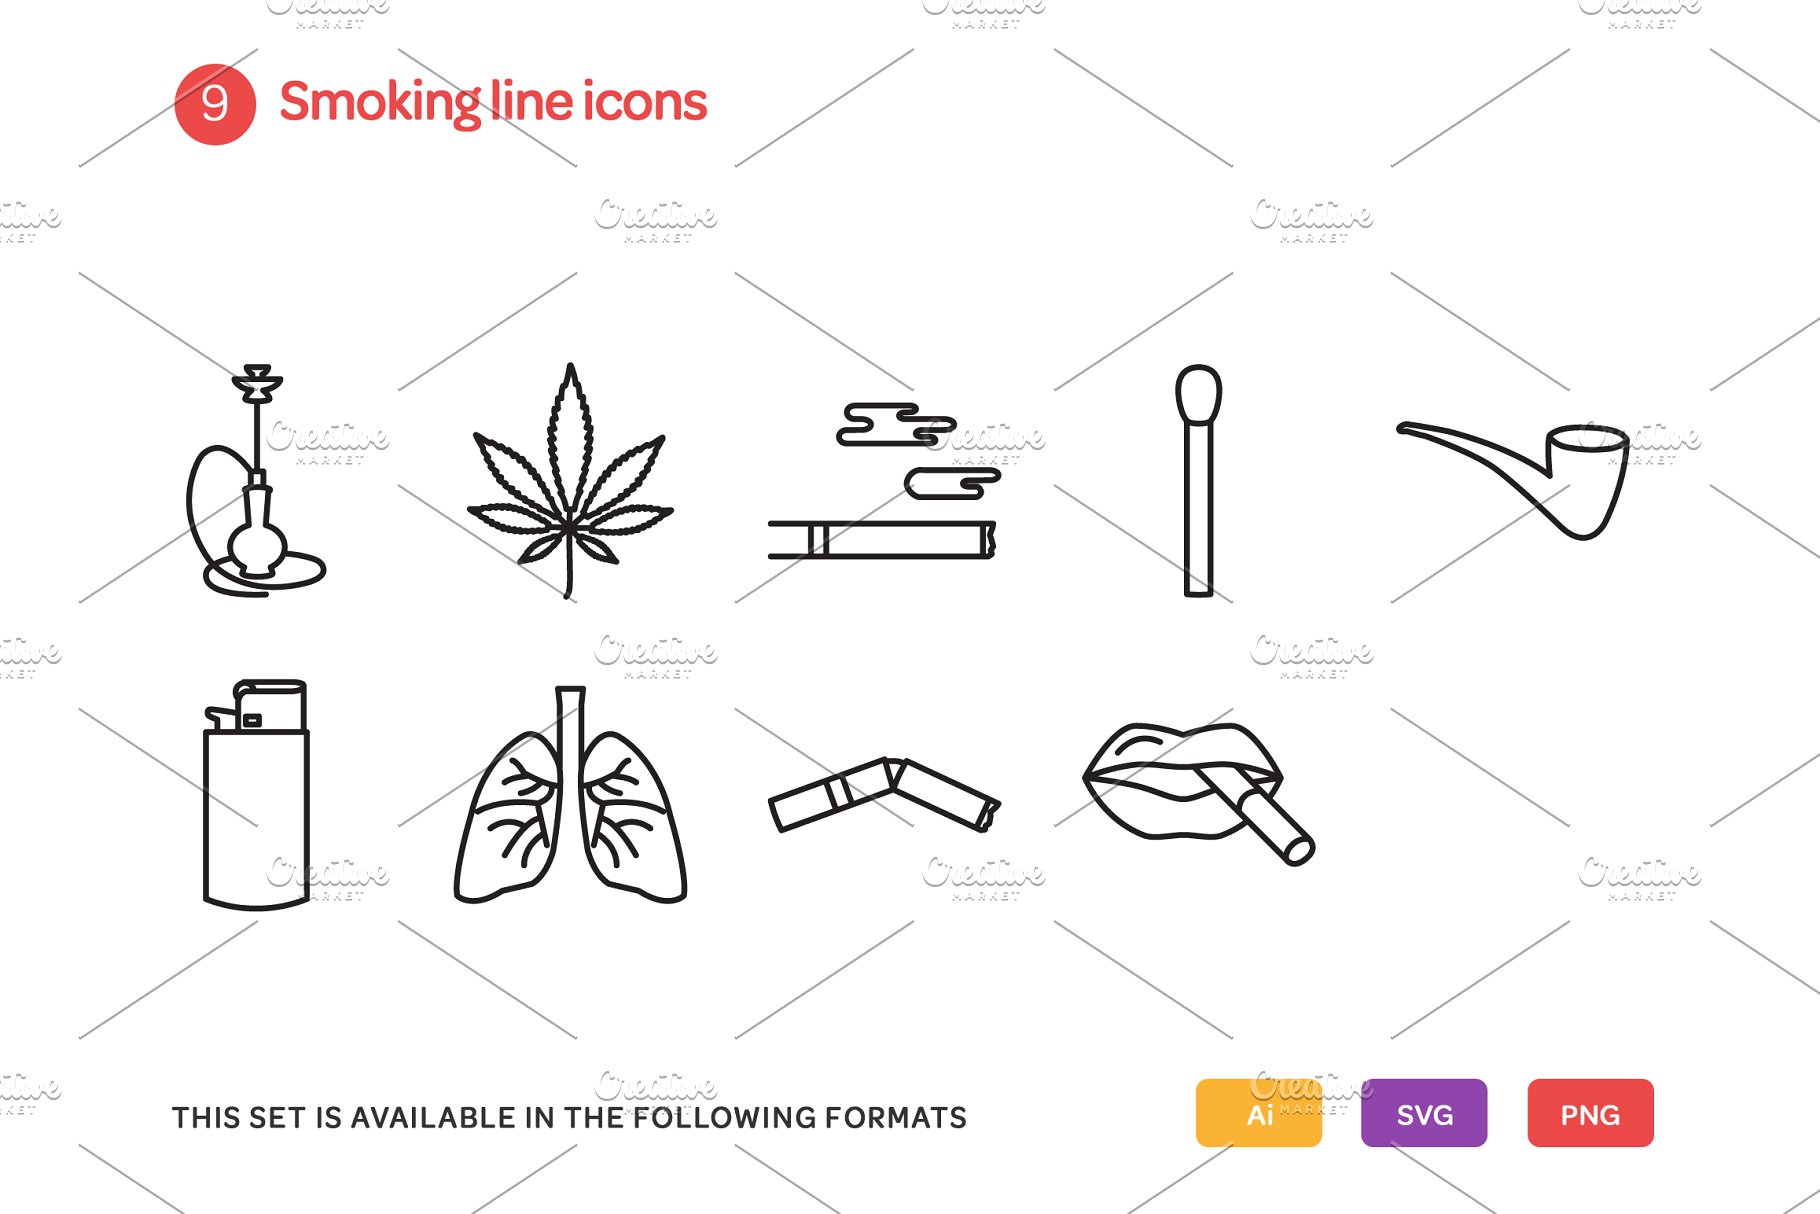 吸烟相关的线型图标 Smoking Line Icons S